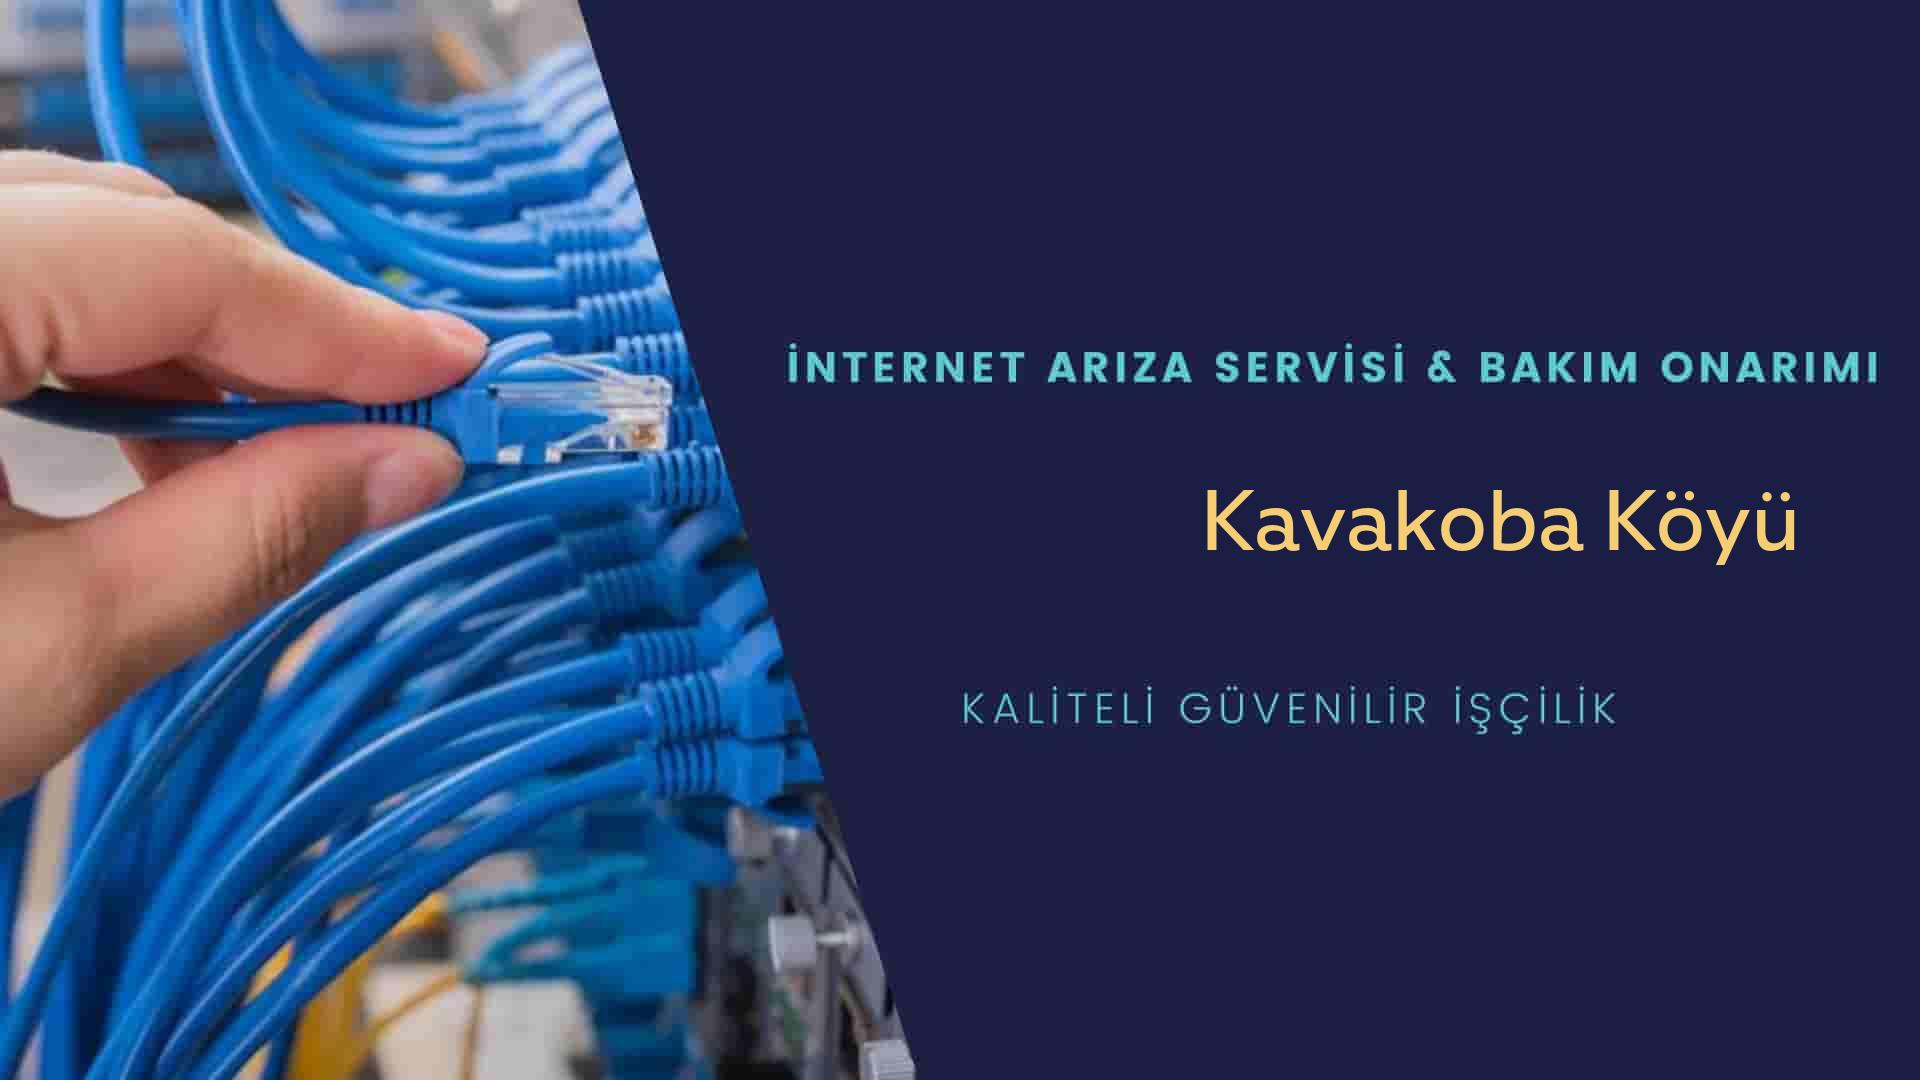 Kavakoba Köyü internet kablosu çekimi yapan yerler veya elektrikçiler mi? arıyorsunuz doğru yerdesiniz o zaman sizlere 7/24 yardımcı olacak profesyonel ustalarımız bir telefon kadar yakındır size.